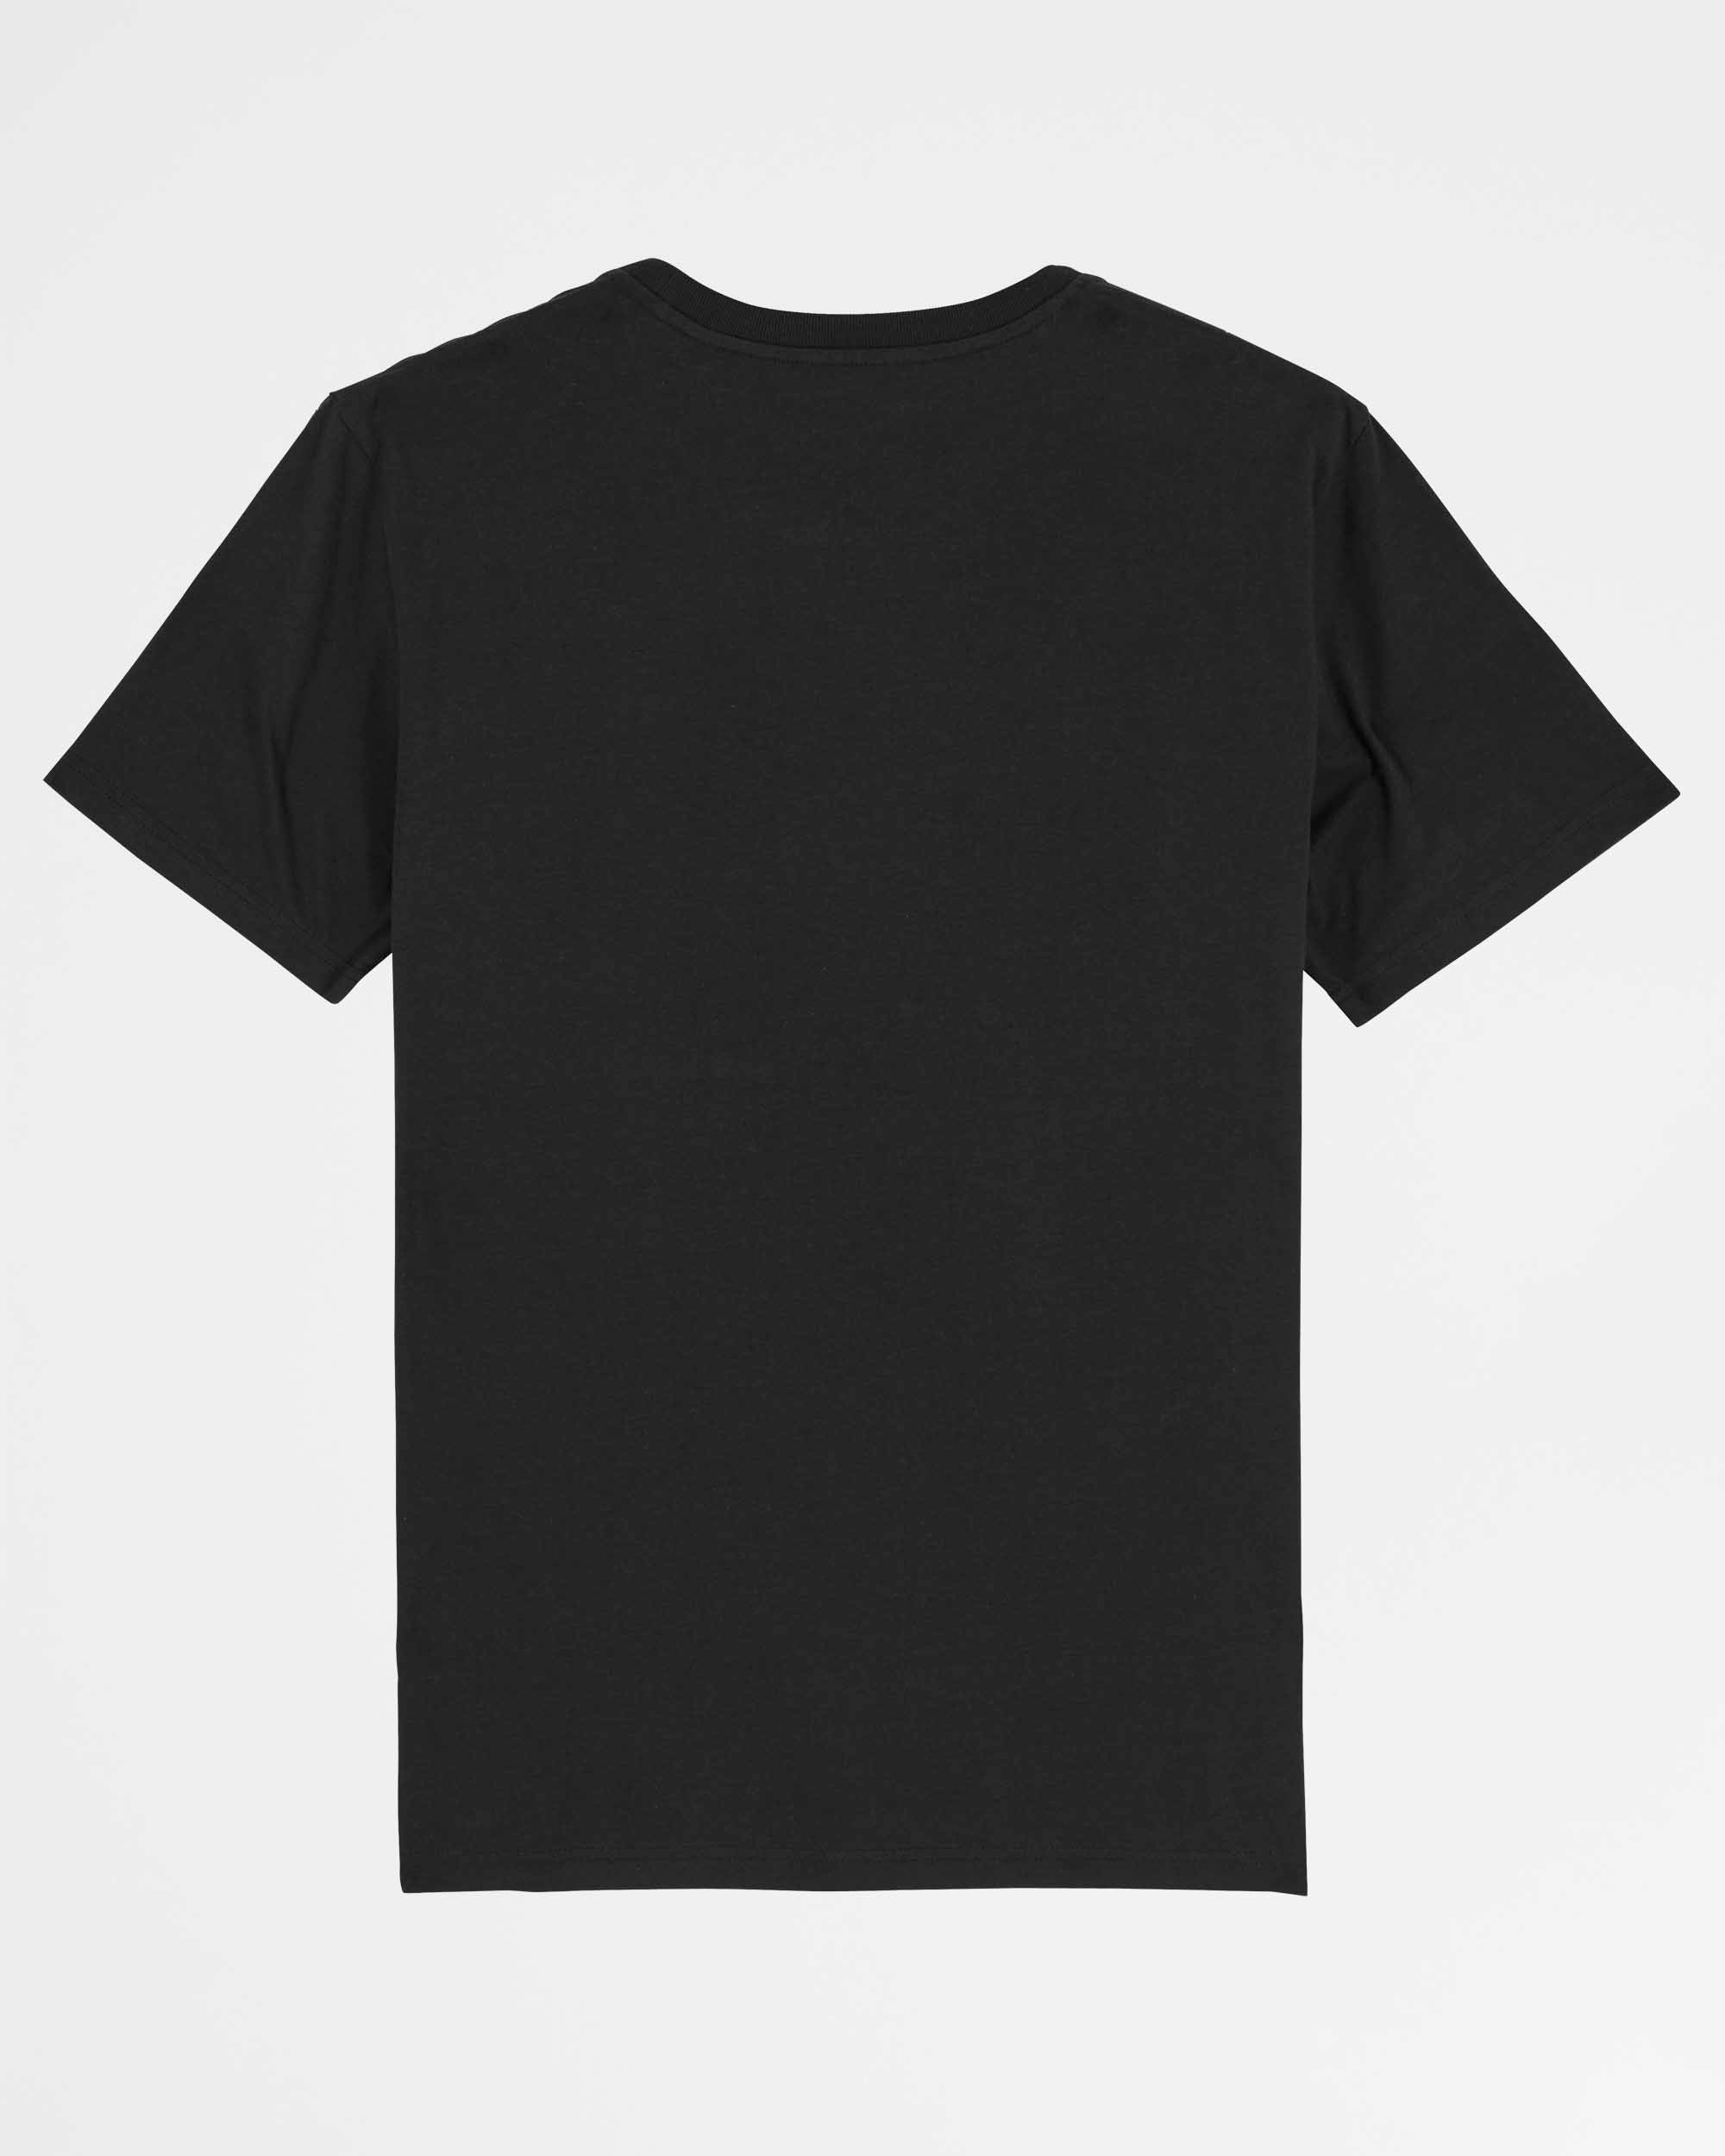 Mach WASD draus | 3-Style T-Shirt